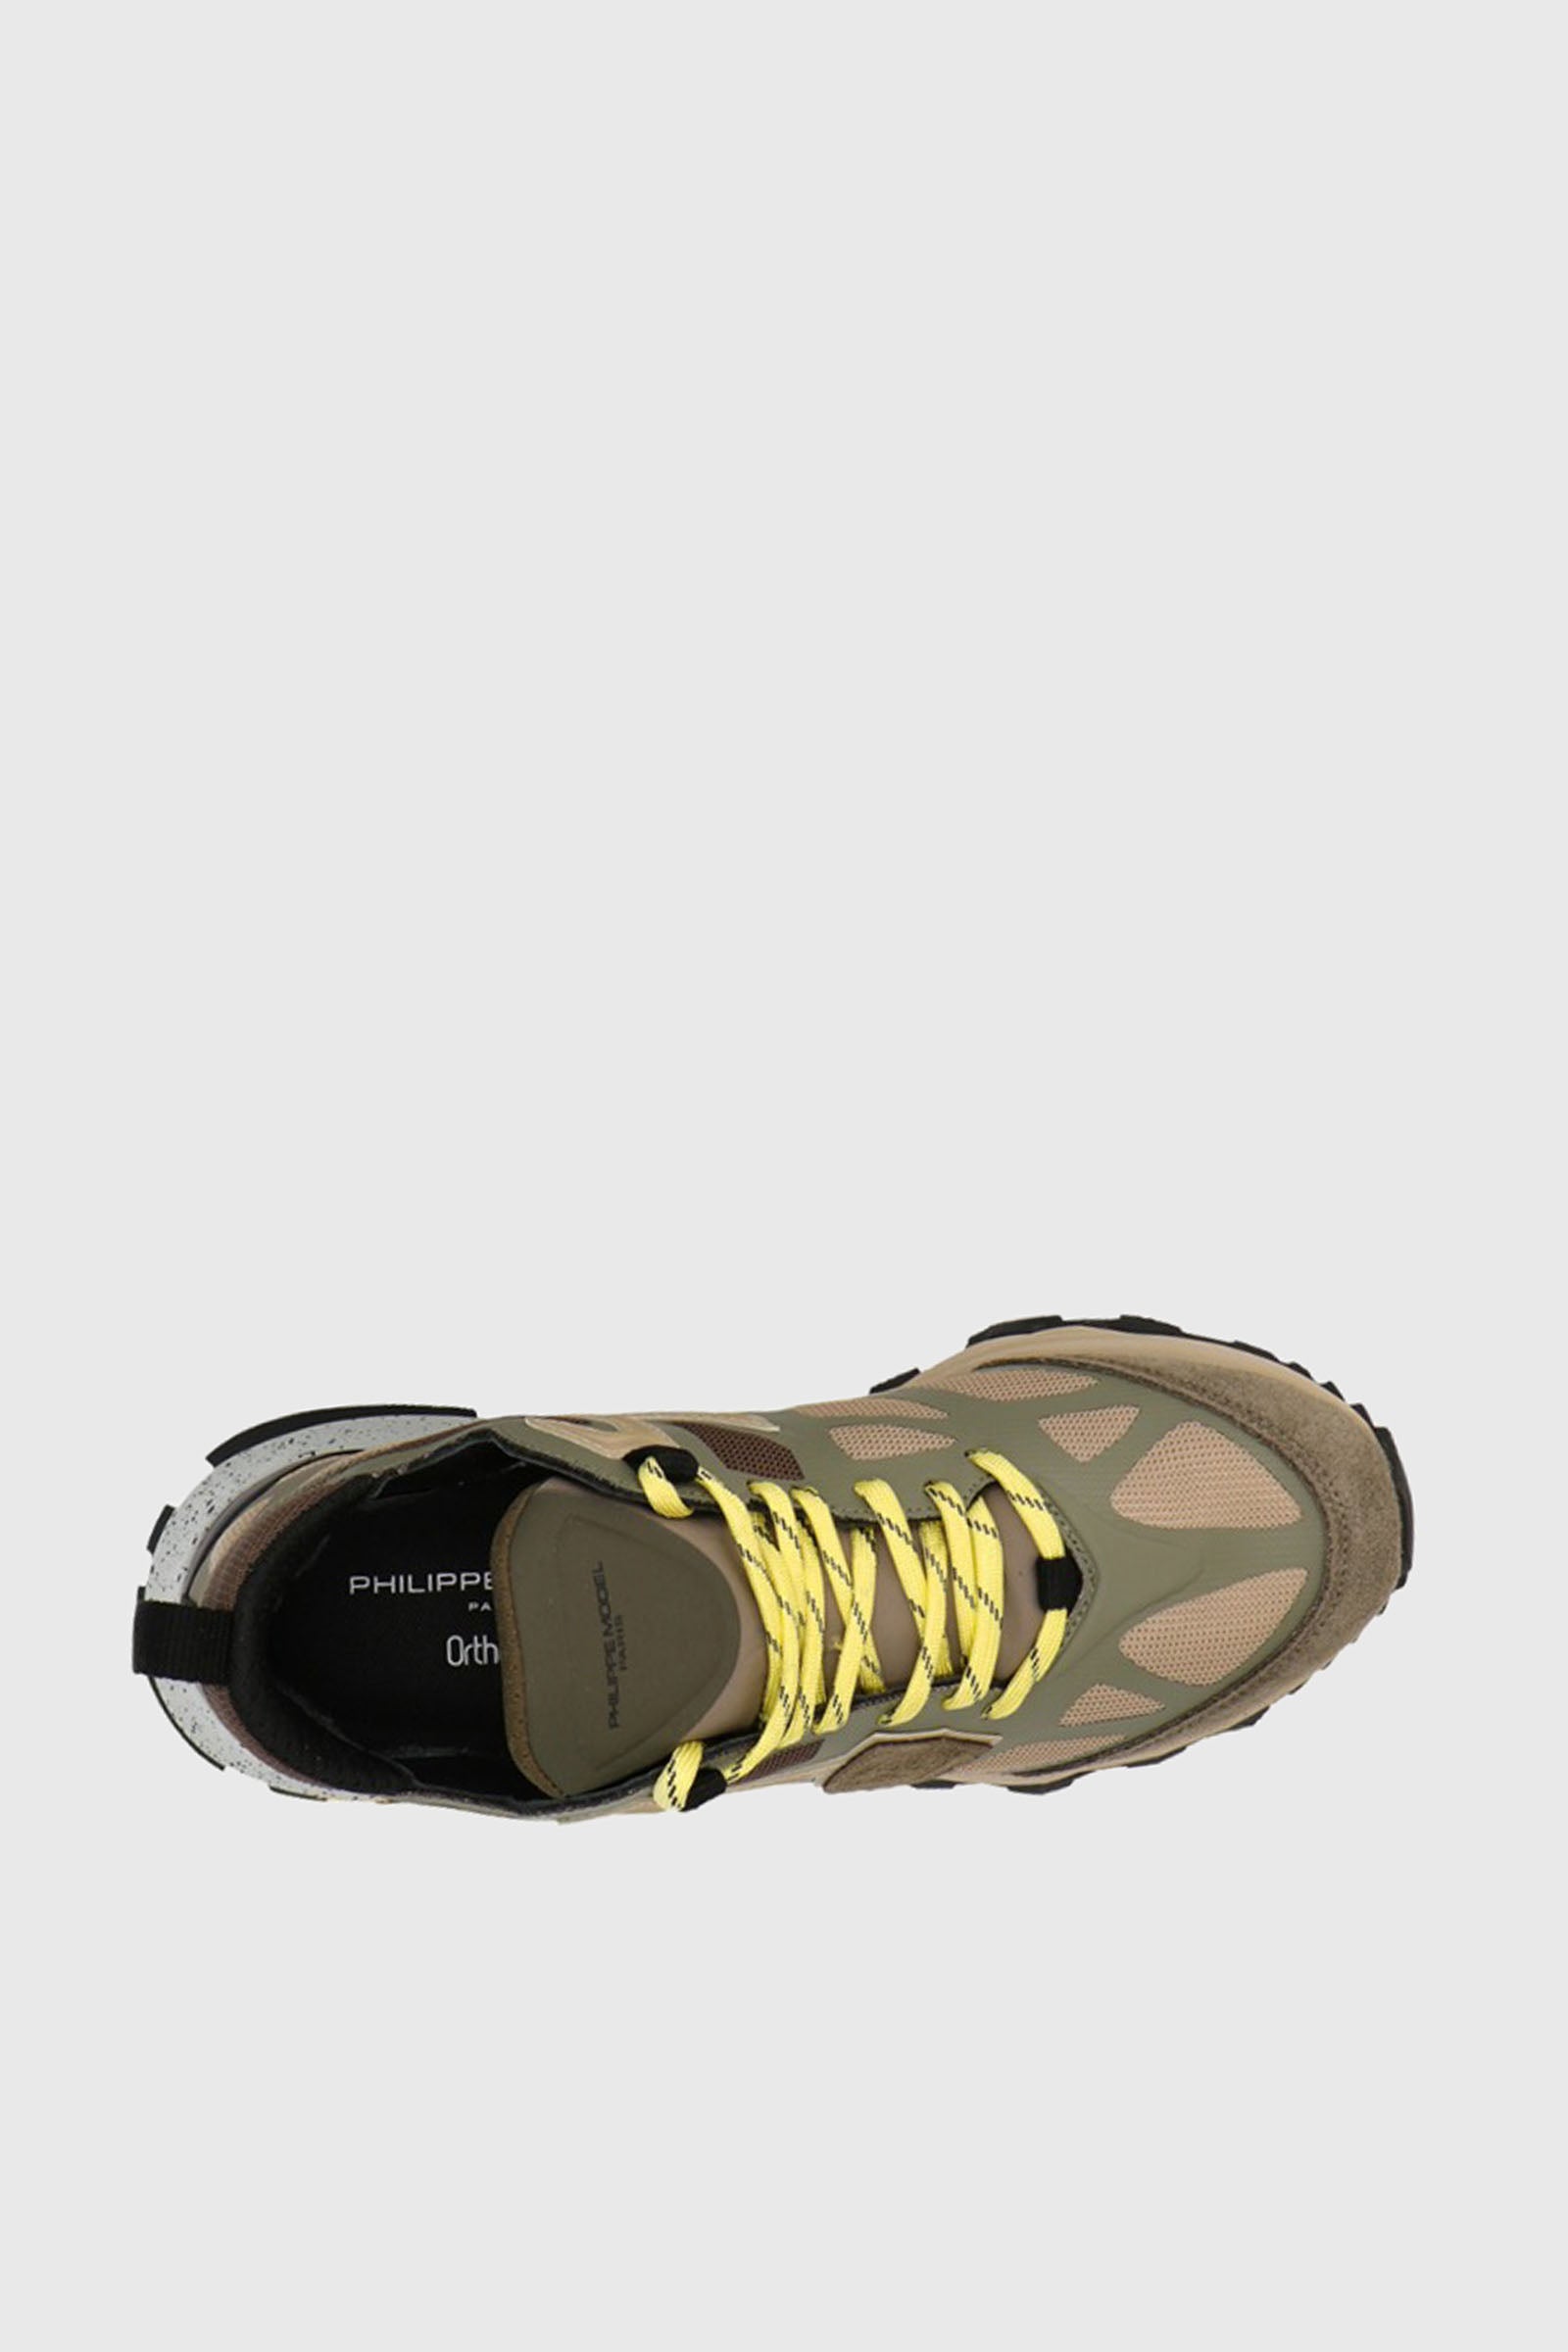 Philippe Model Sneaker Rock Mondial Tech Militaire Verde Militare Uomo - 5